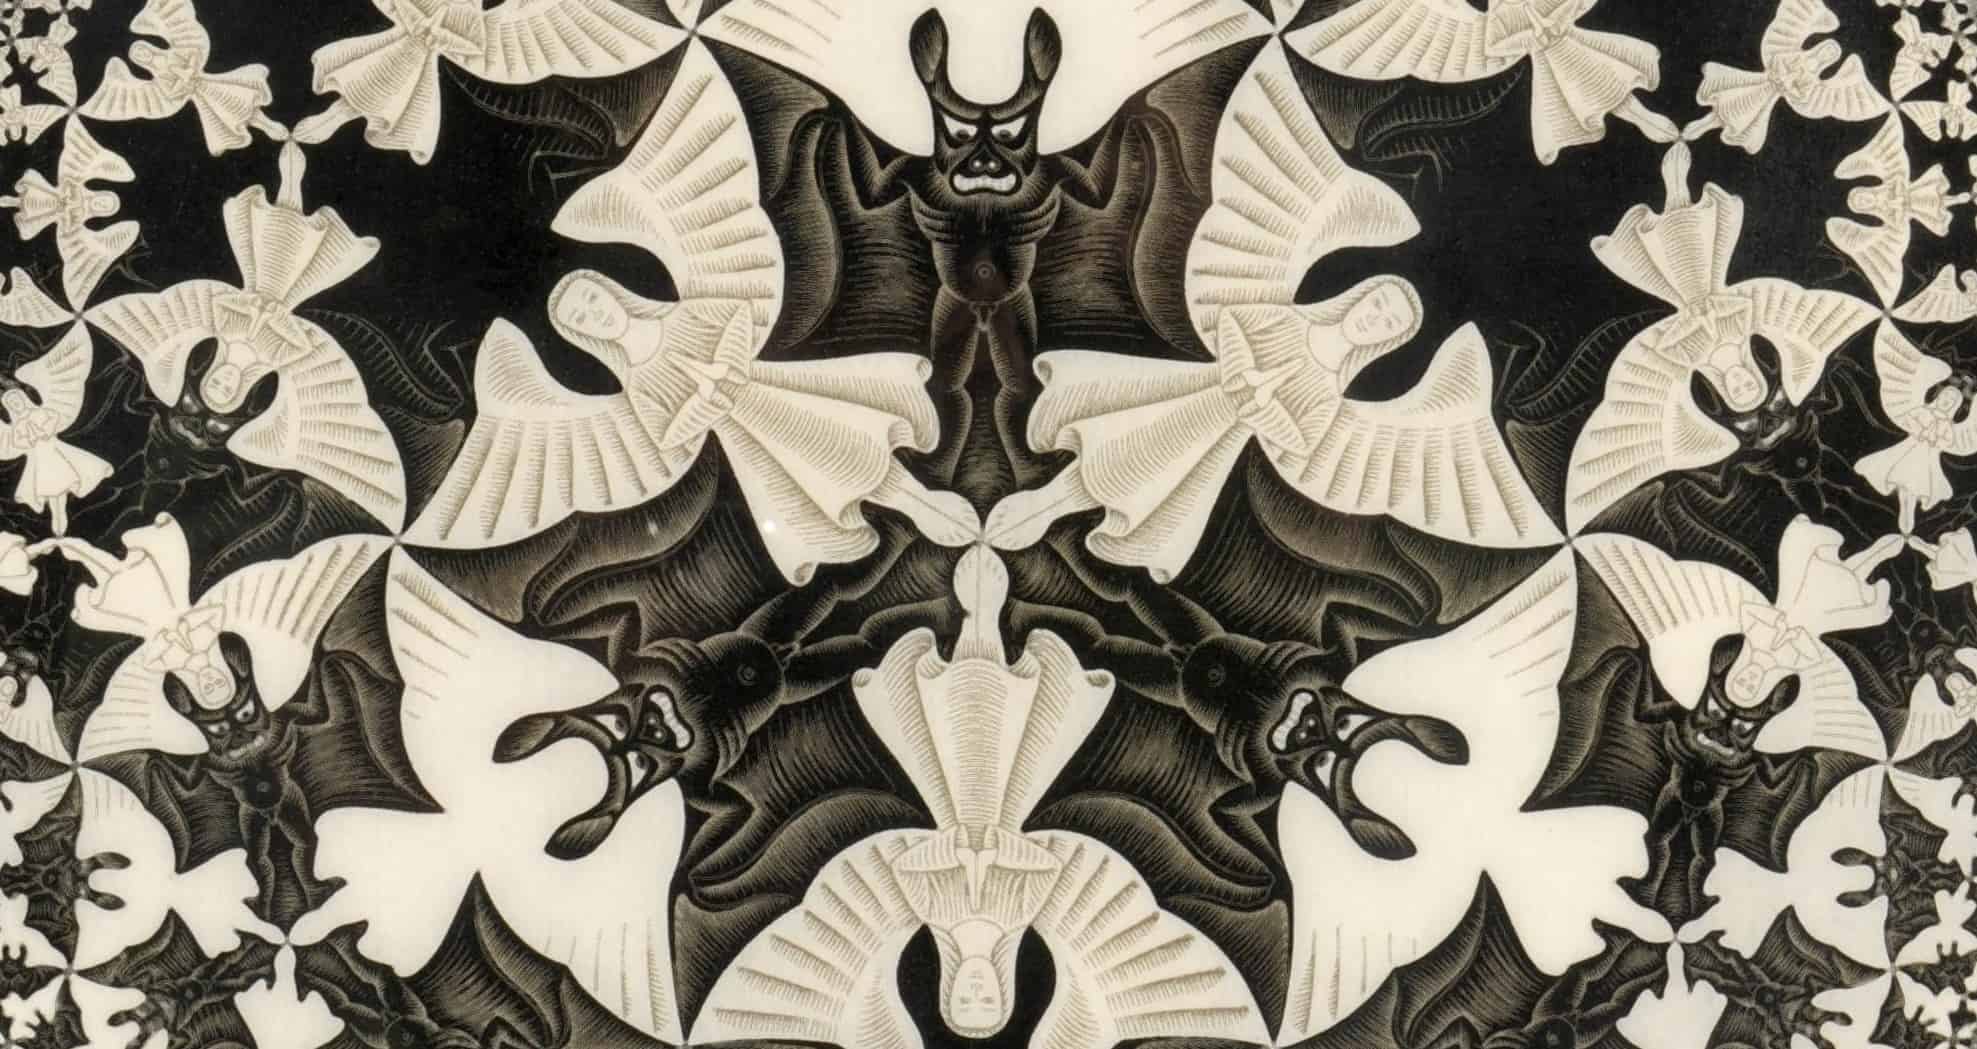 Escher Körhatár IV című fametszetének részletén angyalok és ördögök rendeződnek harmonikus egésszé. A jó és a gonosz között húzódó határ sokszor rendkívül képlékeny.